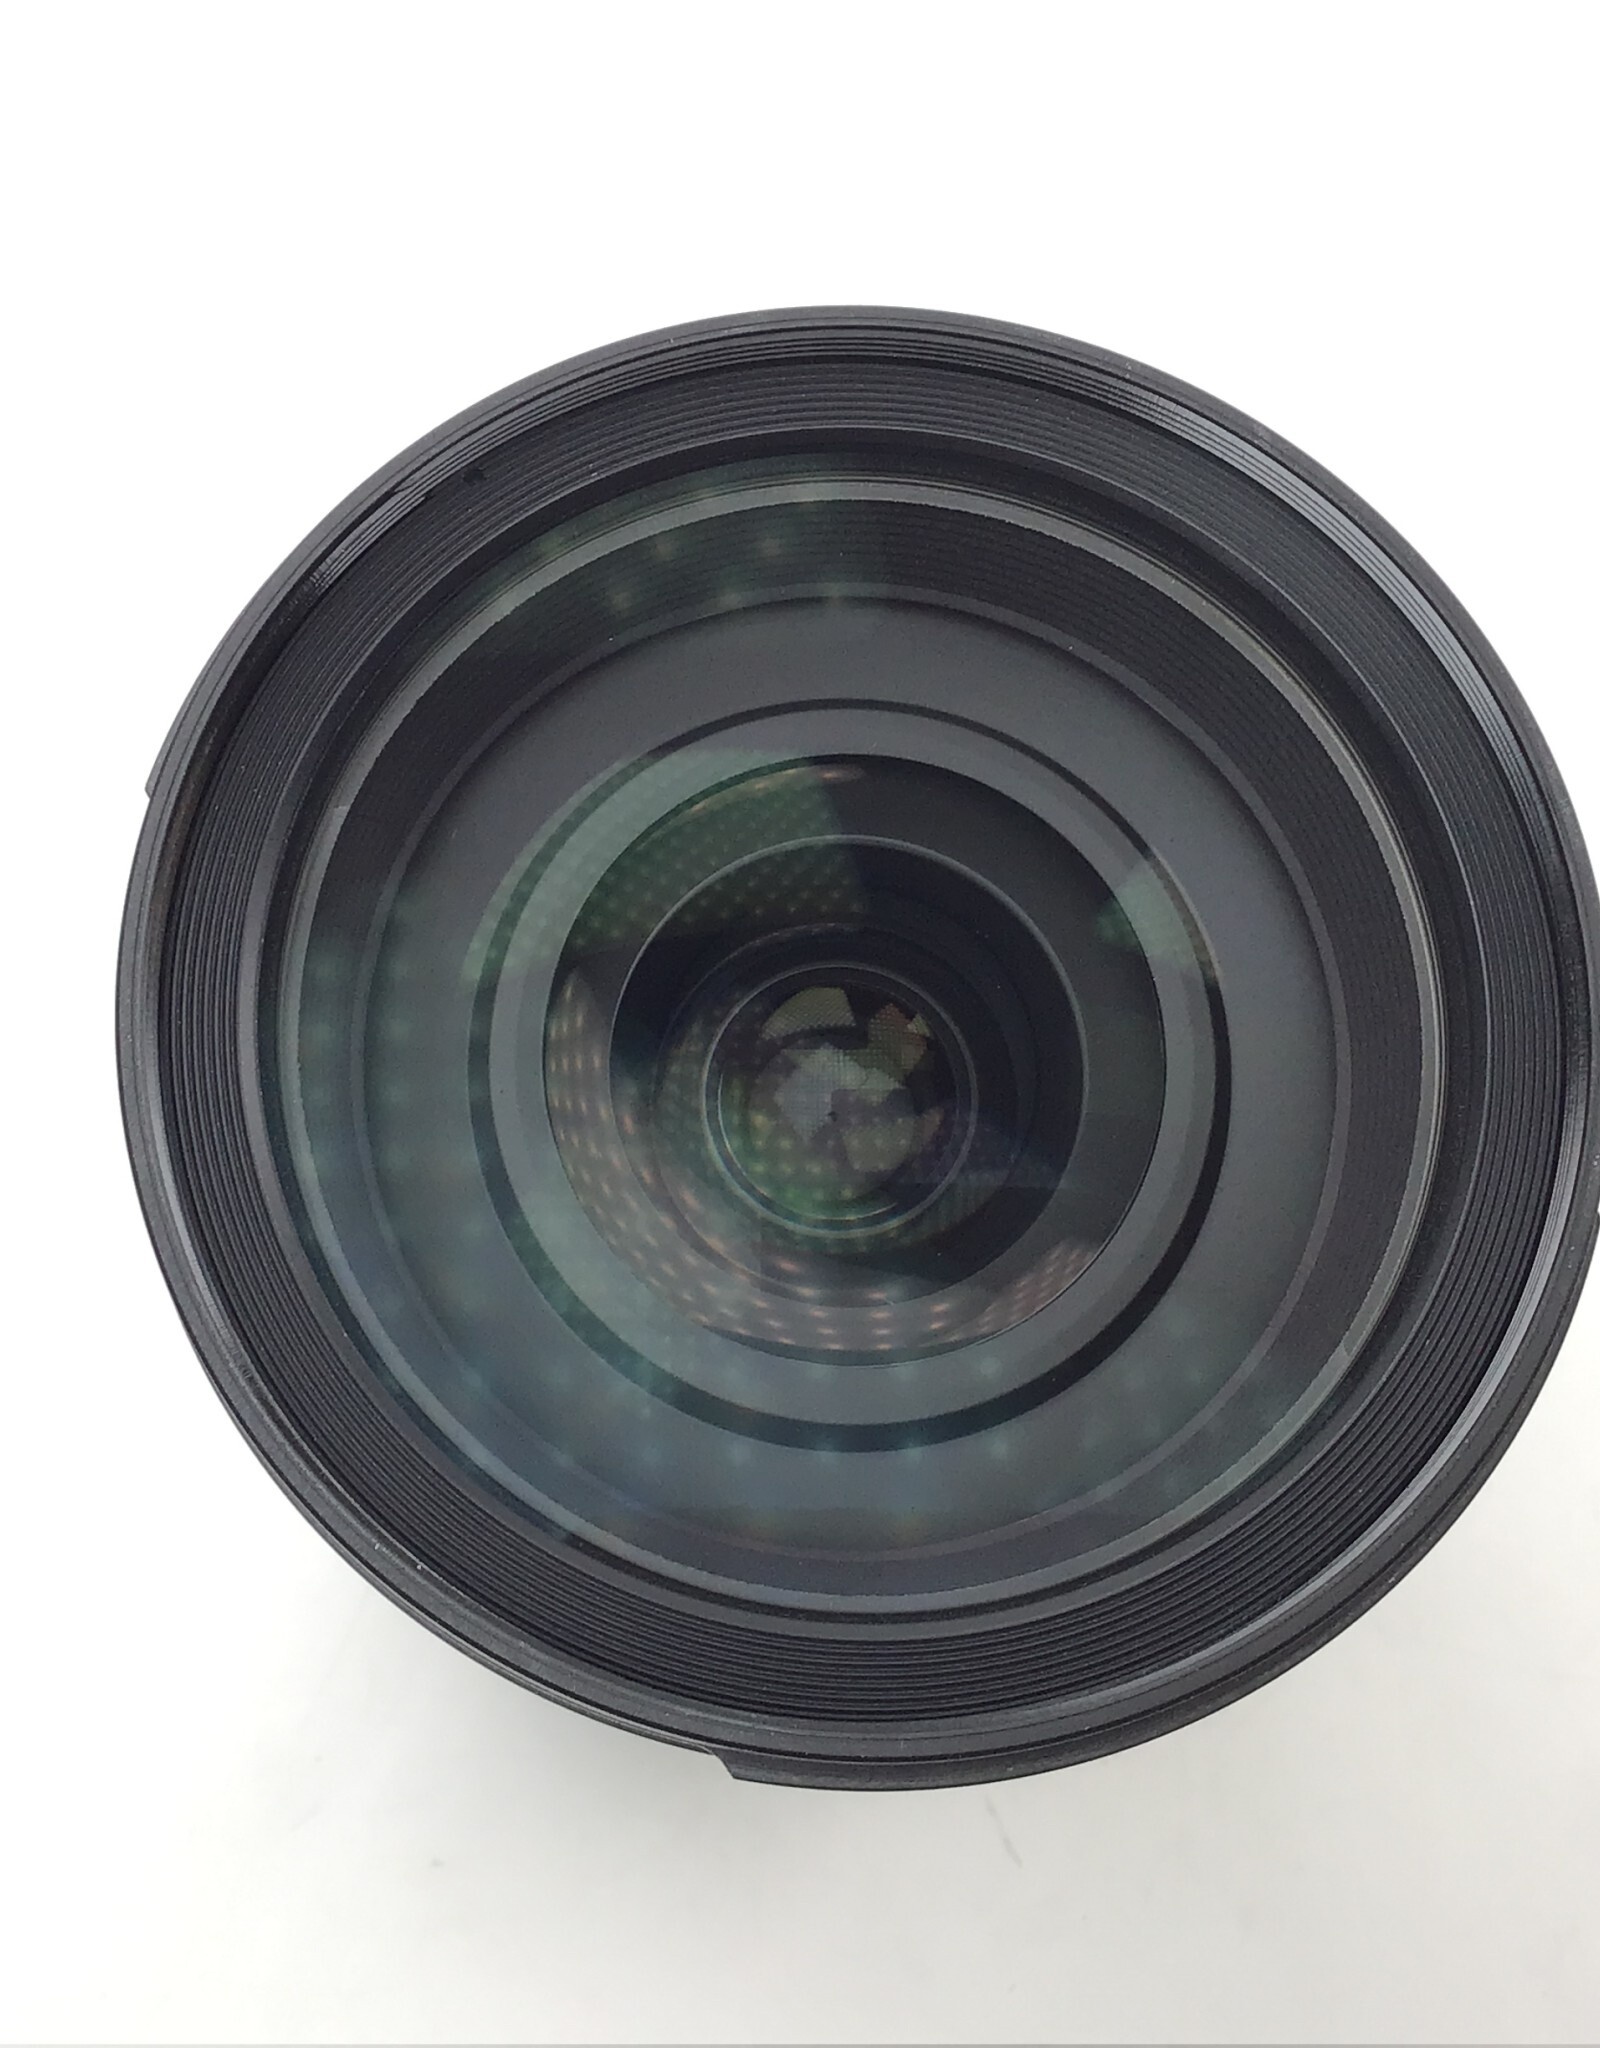 TAMRON Tamron 24-70mm f2.8 VC Lens for Nikon Used Fair